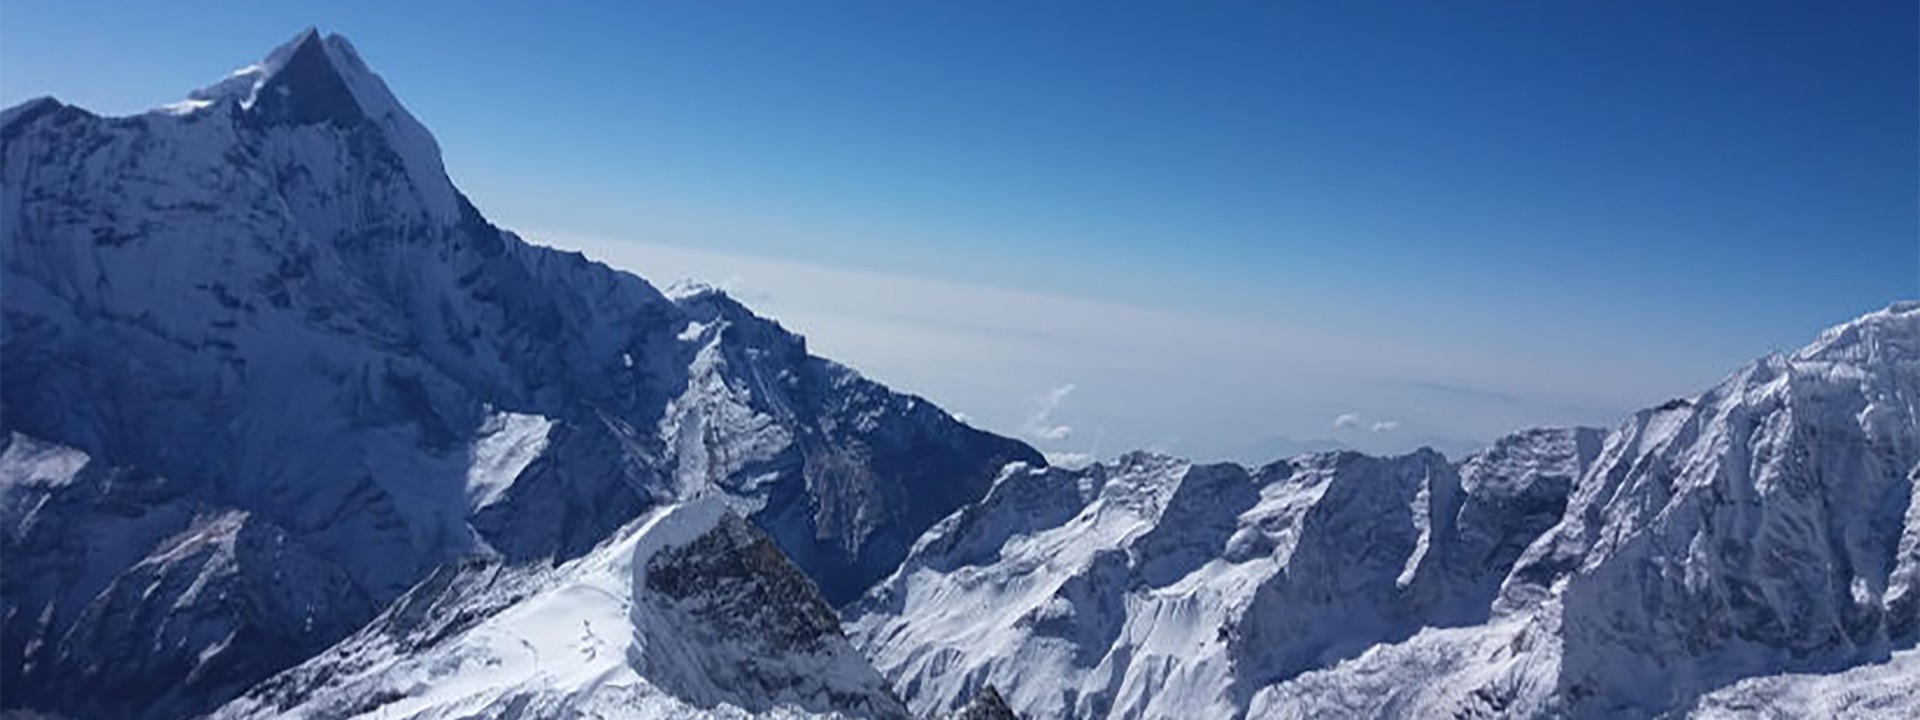 View from Singu Chulu Peak - Flute Peak in Nepal